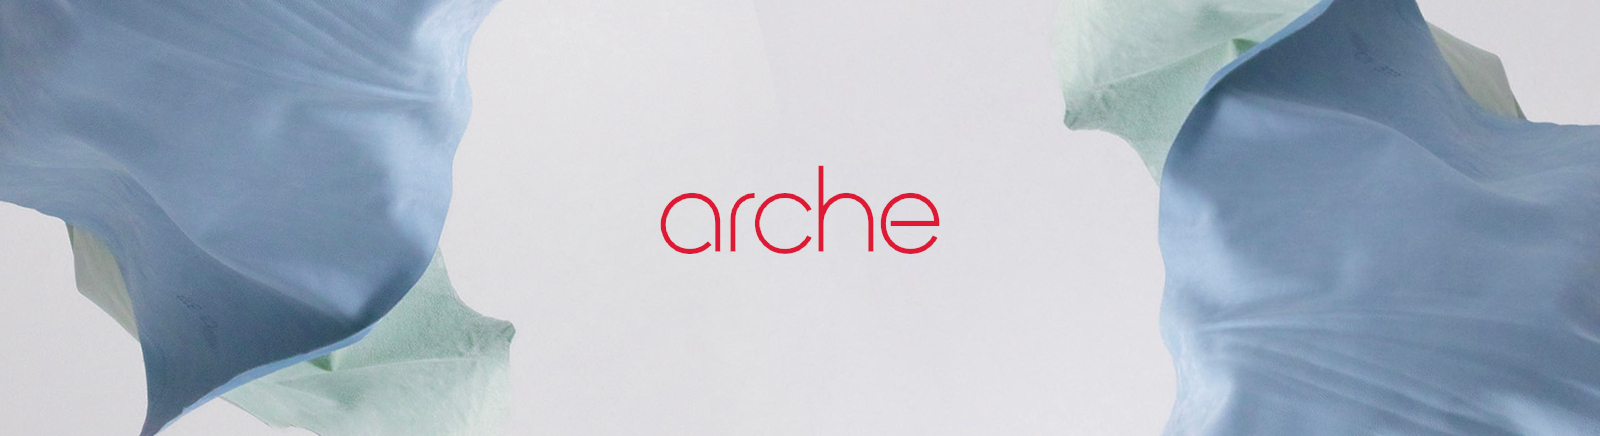 Arche Chelsea Boots für Damen im Online-Shop von GISY kaufen